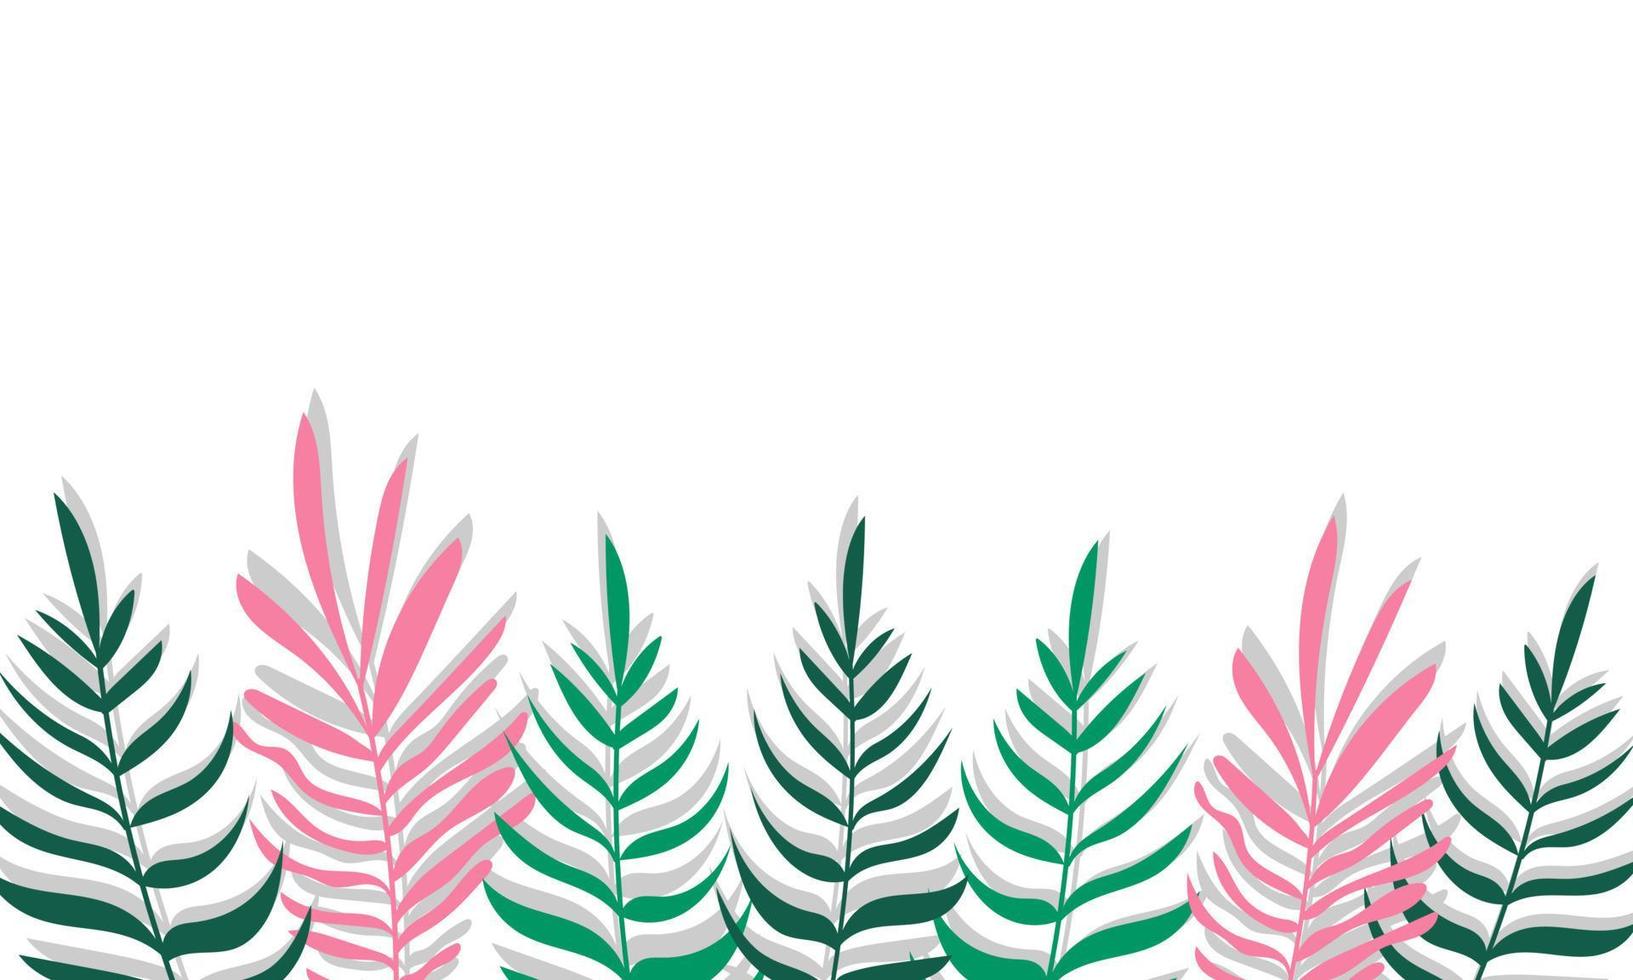 banner vectorial minimalista de plantas. flores dibujadas a mano, hierba, ramas, hojas sobre un fondo blanco. patrón horizontal simple verde. estilo plano sencillo. todos los elementos están aislados y editables vector